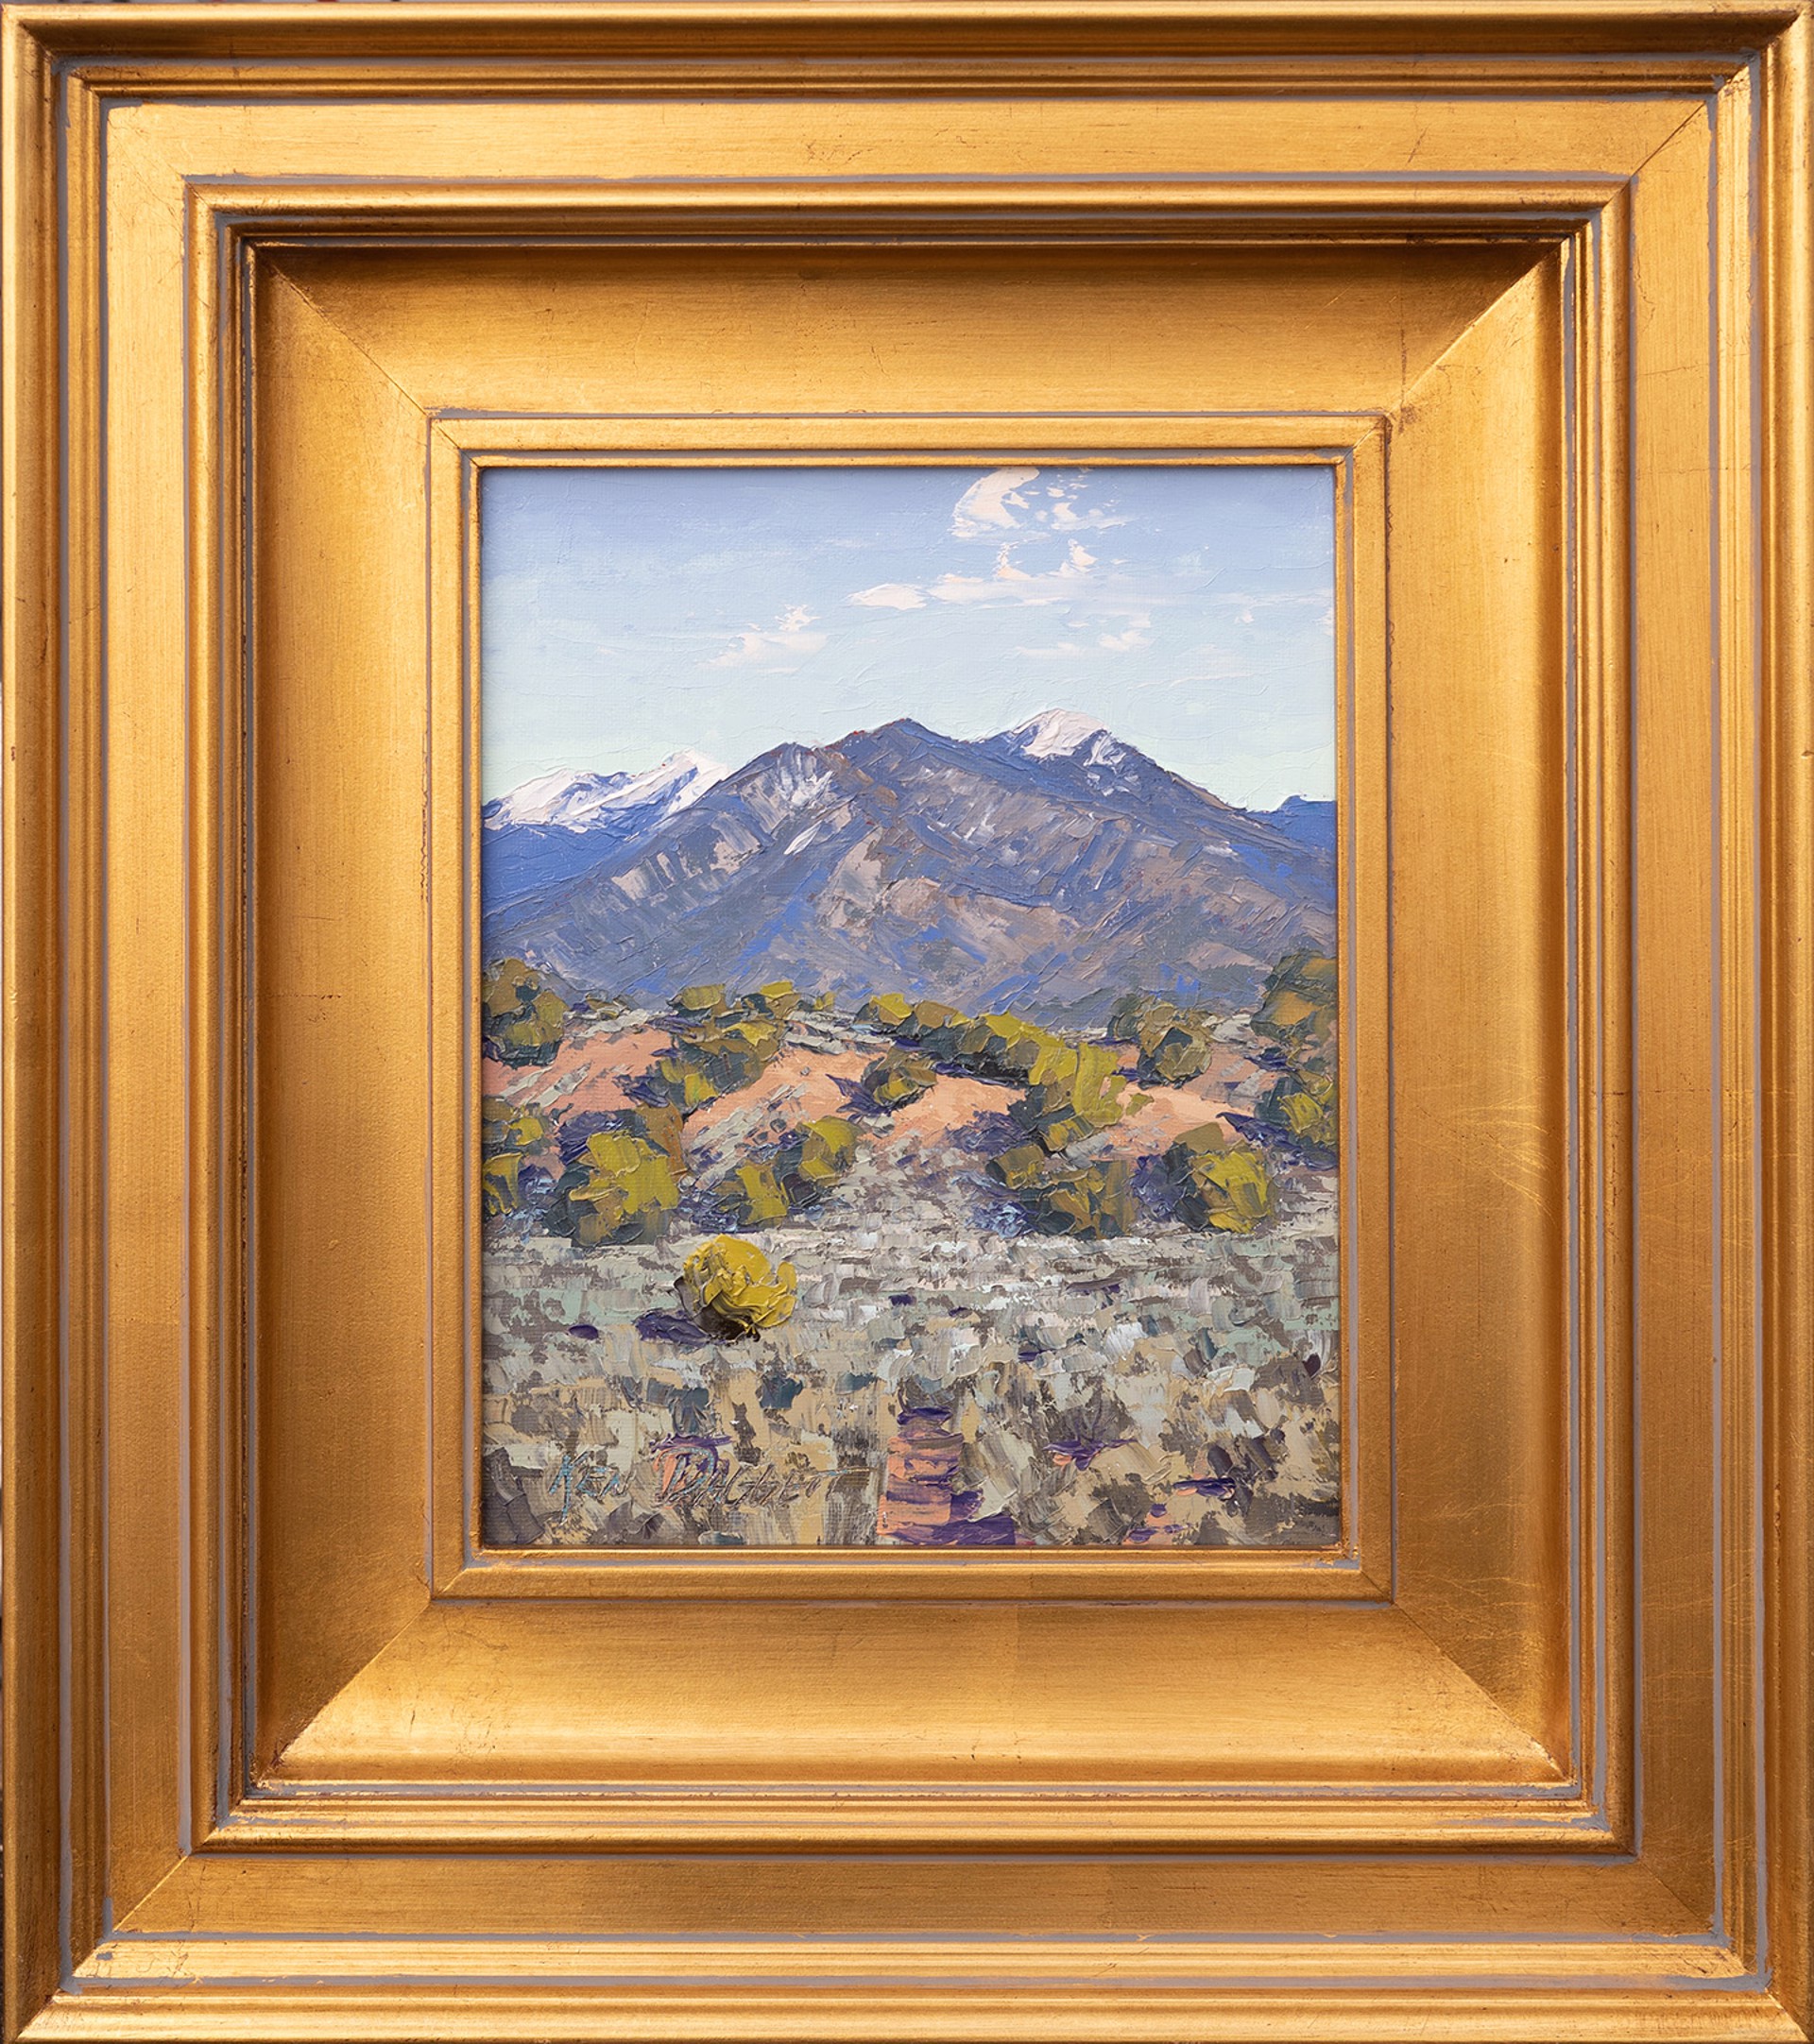 Taos Mountains by Ken Daggett